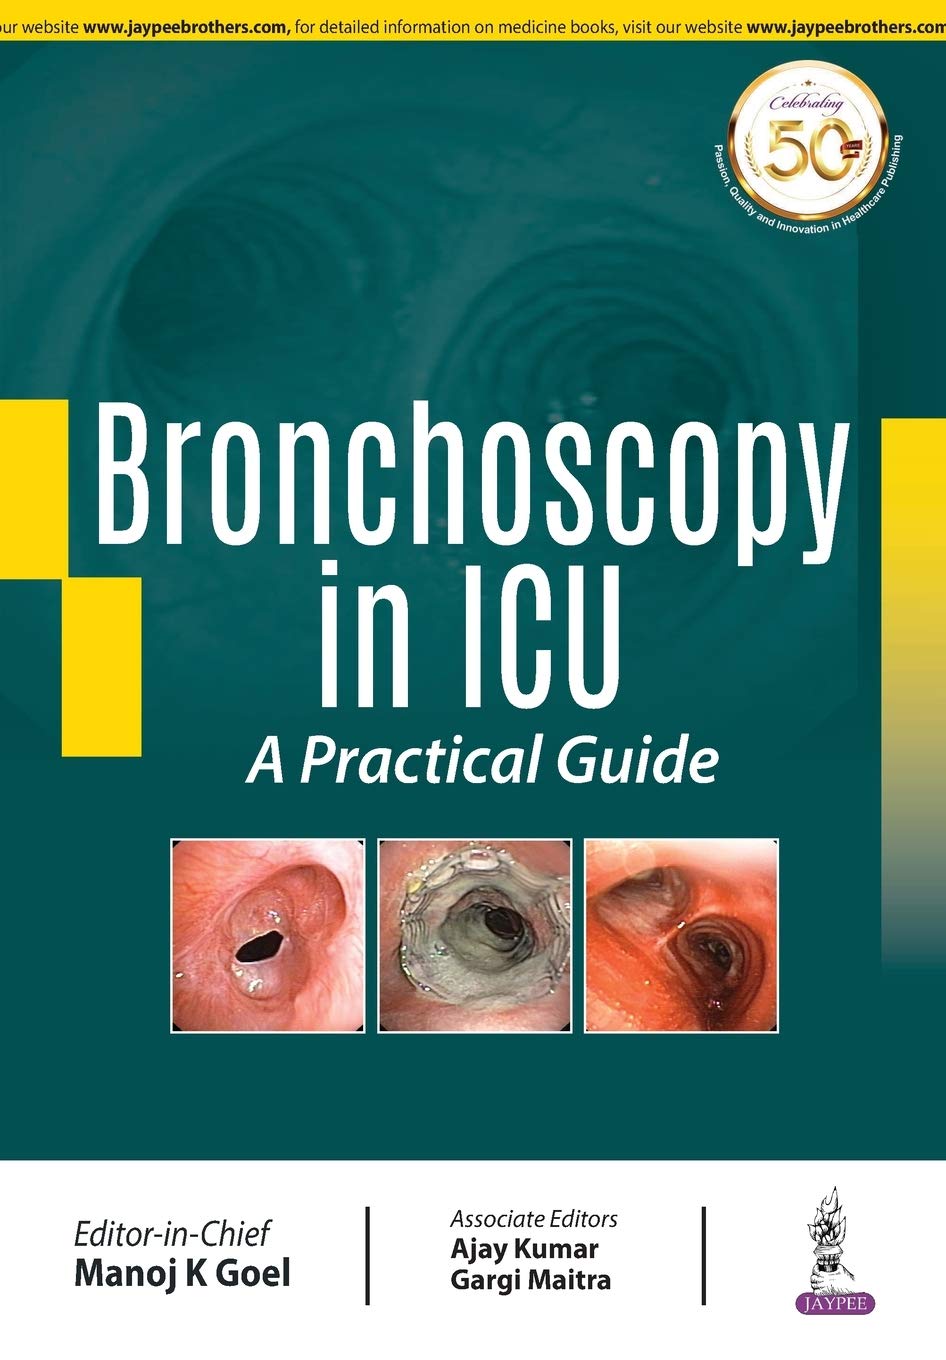 Bronchoscopy In Icu: A Practical Guide